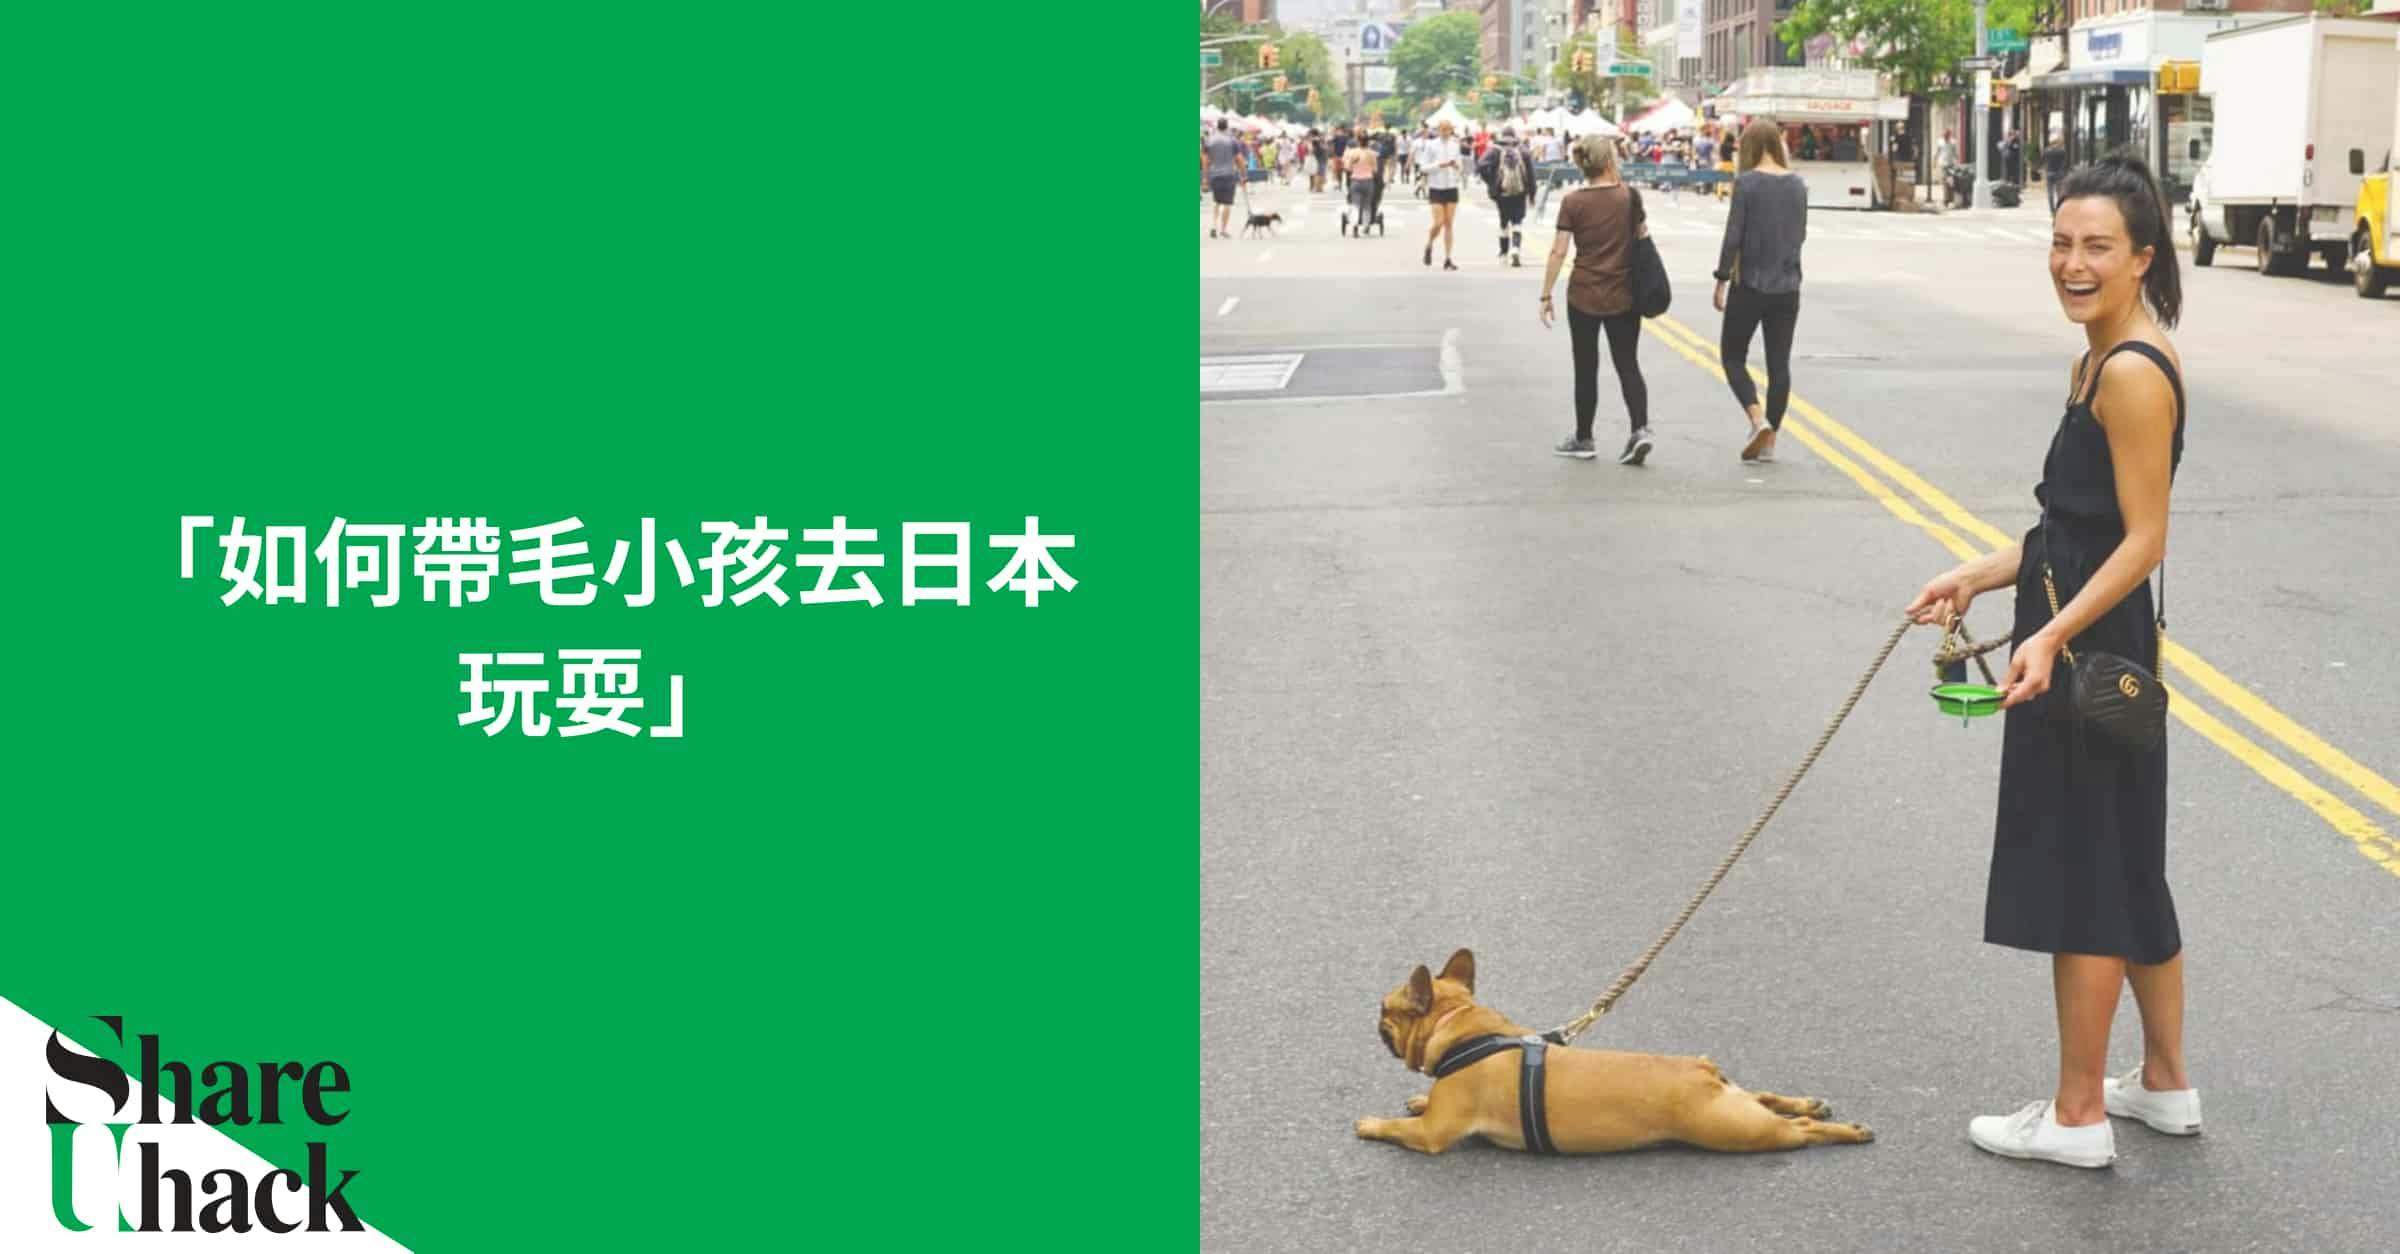 在防檢局的輸出犬貓注意事項中有明確說明「輸出犬貓應符合輸入國之規定」，因為台灣目前屬於狂犬病疫區國家，若要帶毛小孩前往像日本這些非狂犬病疫區國家需要比較多的事前準備及待機時間。此篇文章詳列帶毛小孩去日本的必要步驟：